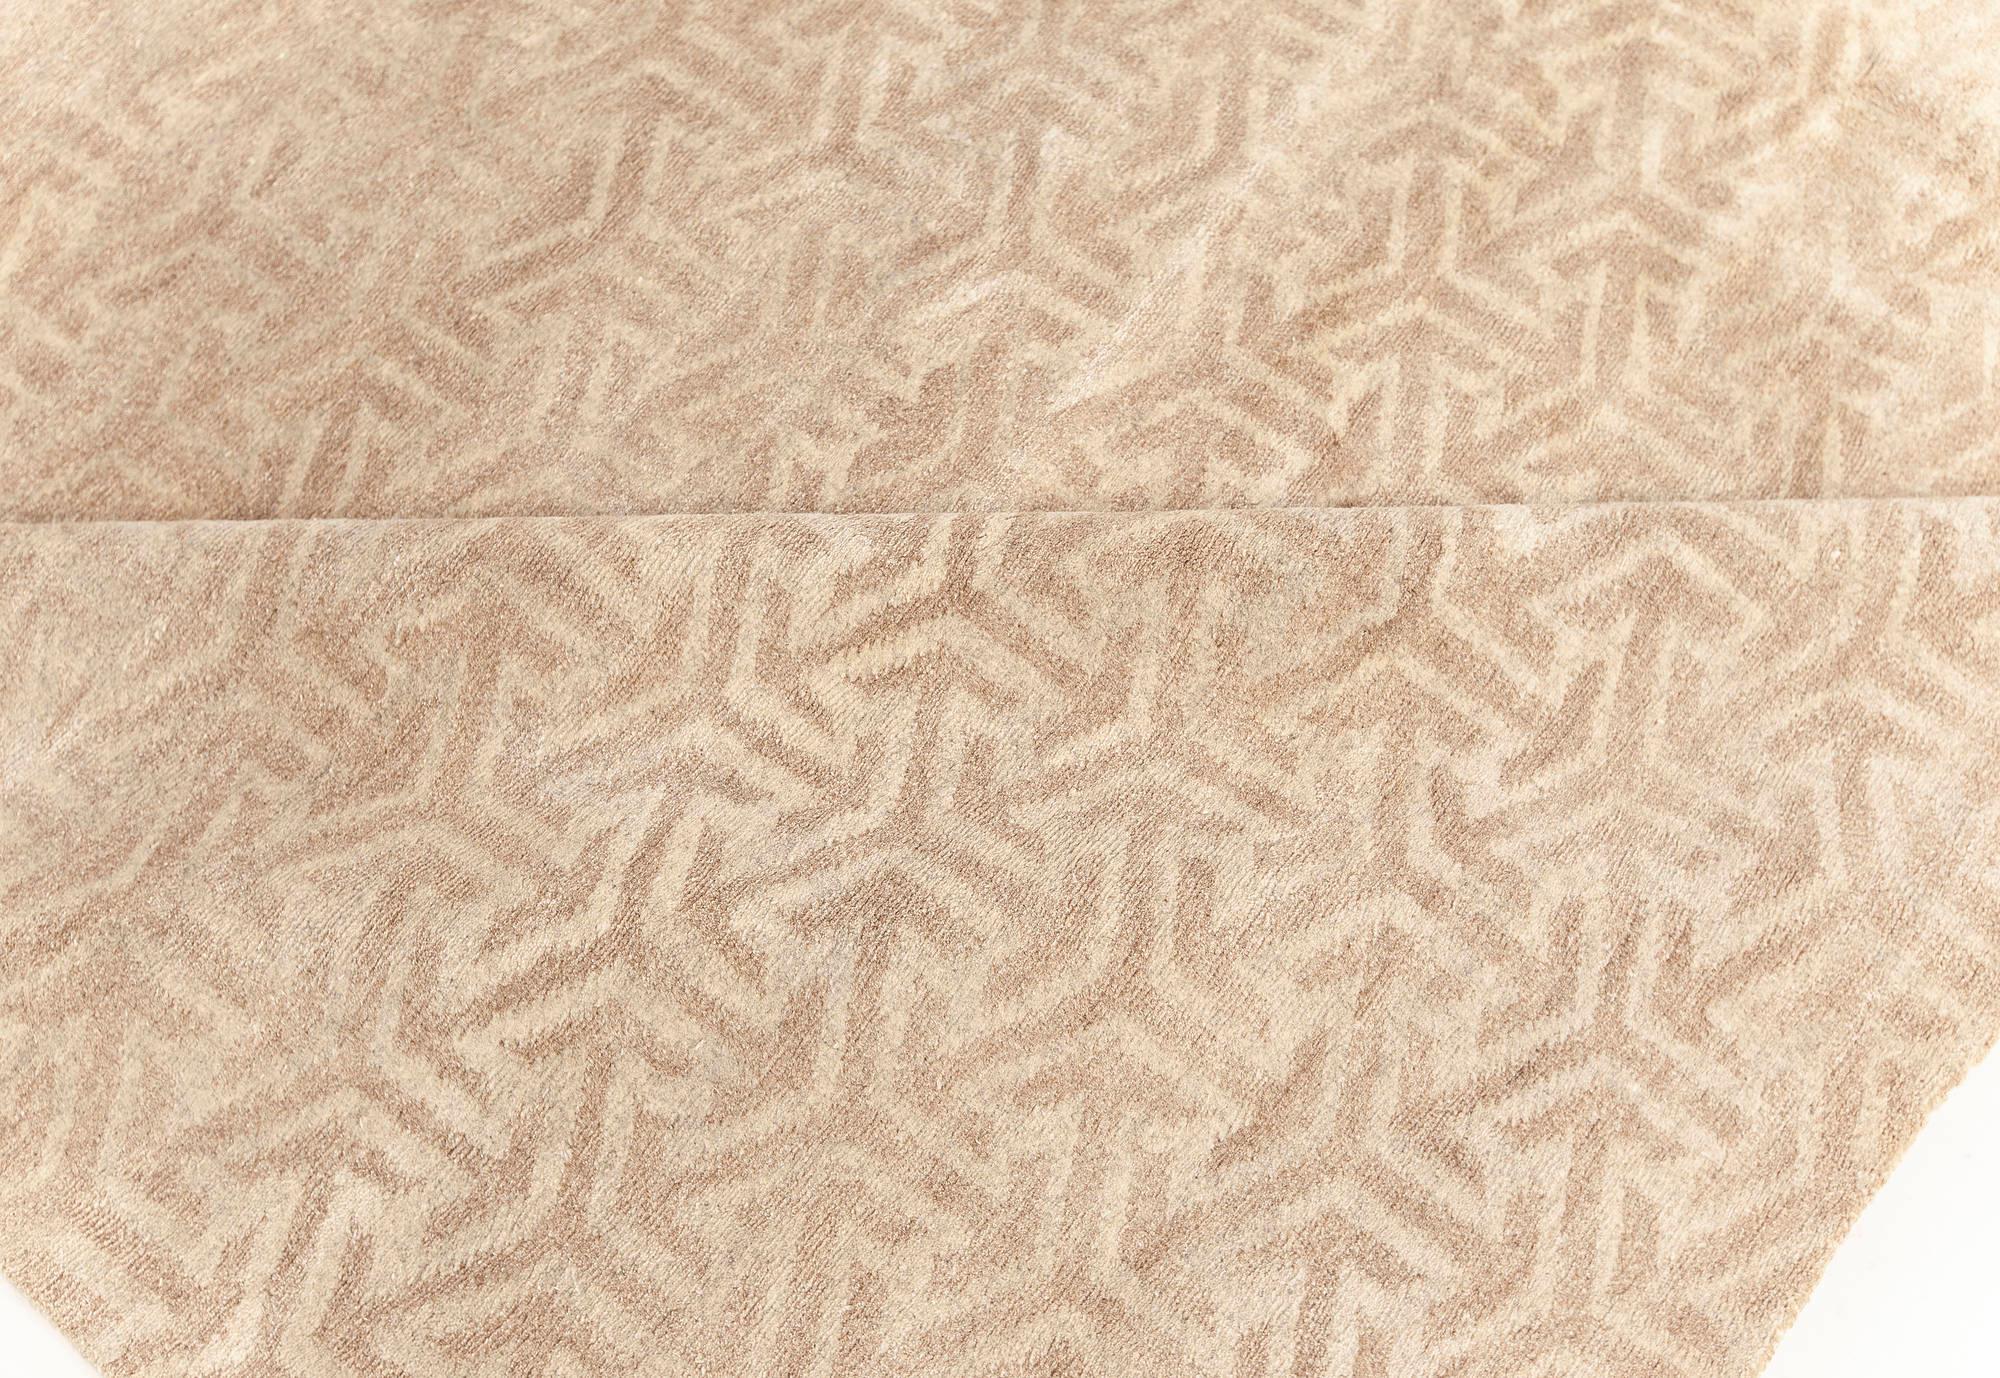 Contemporary Terra Beige rug in natural wool by Doris Leslie Blau.
Size: 12'0